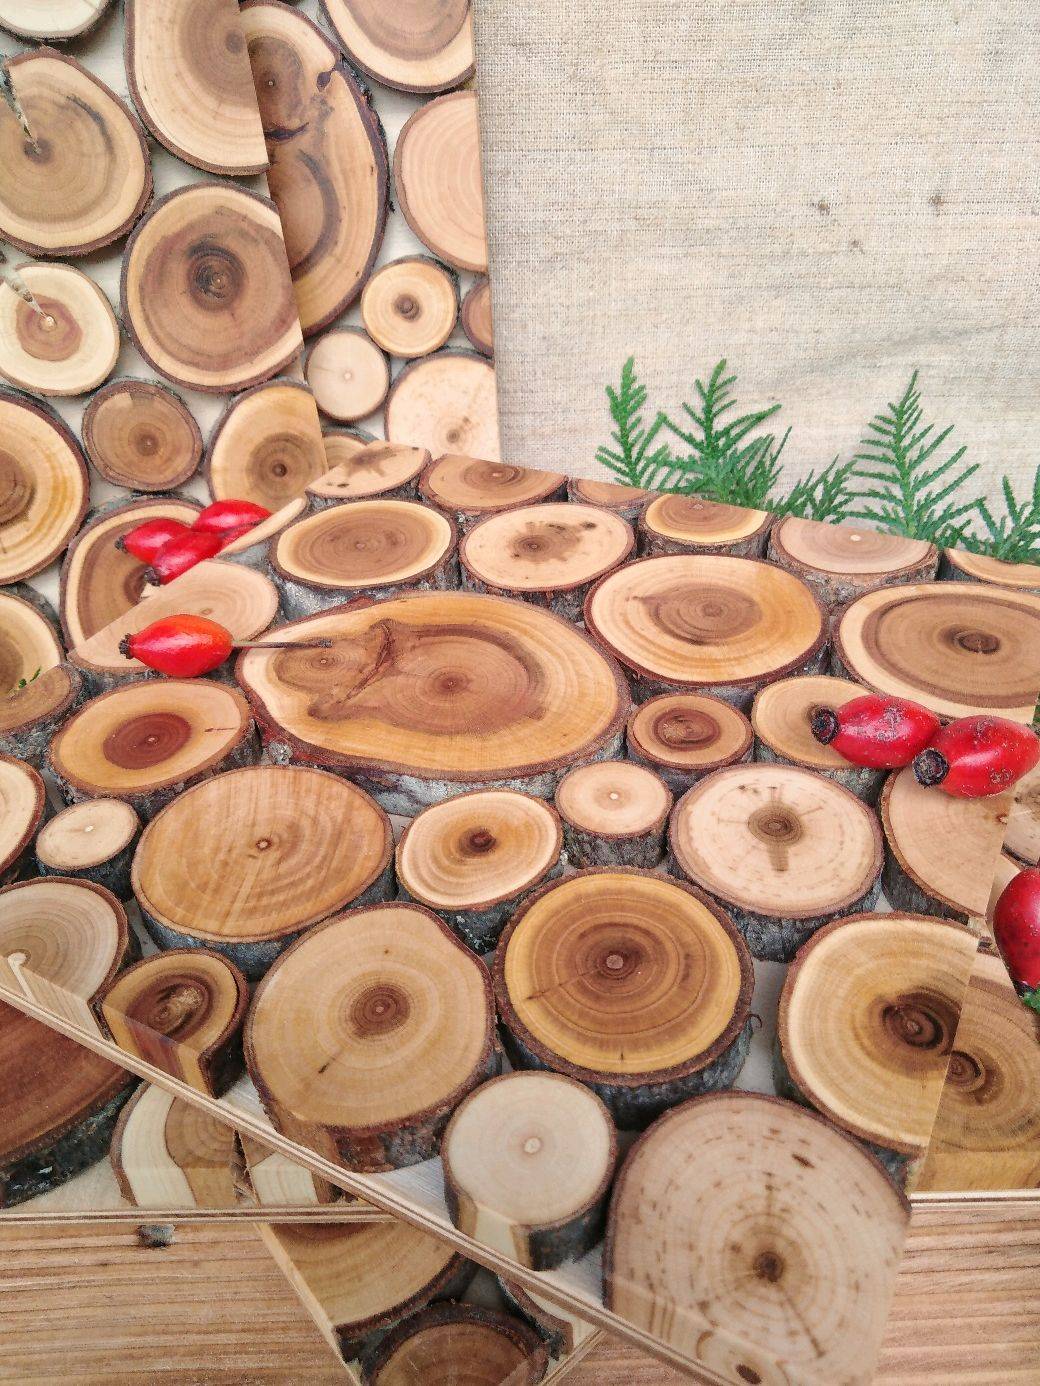 Поделки из спилов дерева своими руками: легкие мастер-классы и прикольные фото идеи изделий для дачи, сада, детей